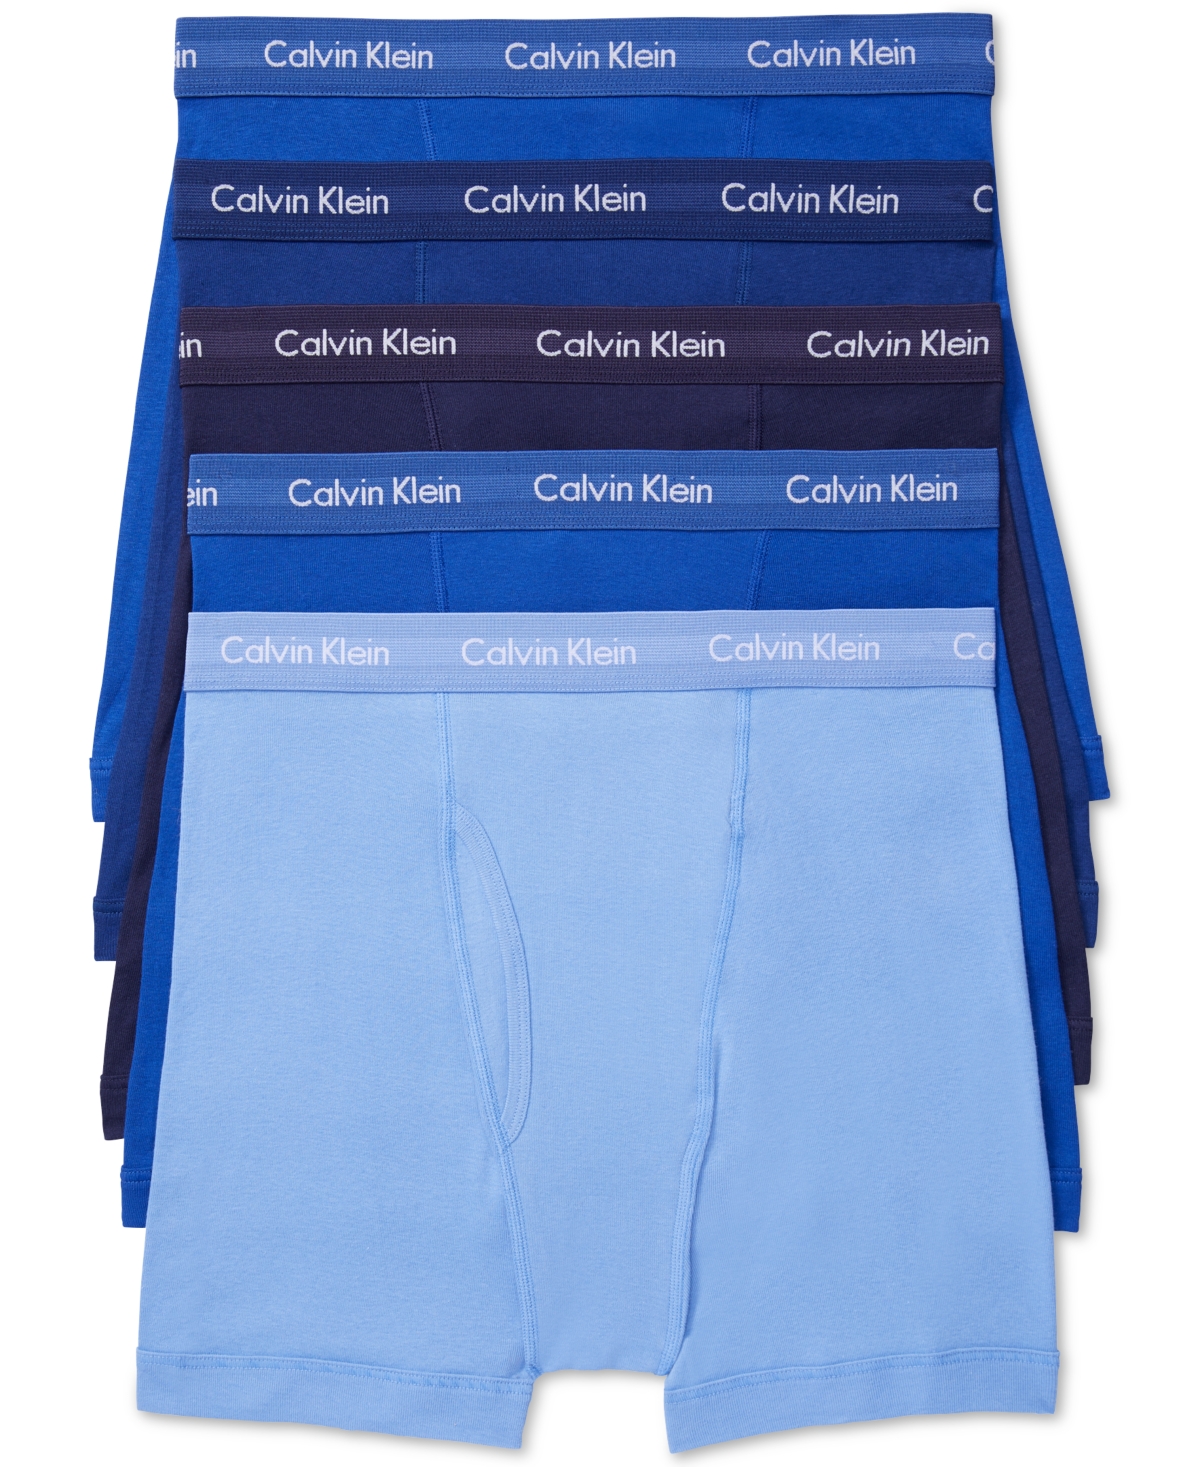 Calvin Klein Men's 5-pack Cotton Classic Boxer Briefs Underwear In Periwinkle,mazarine Blue